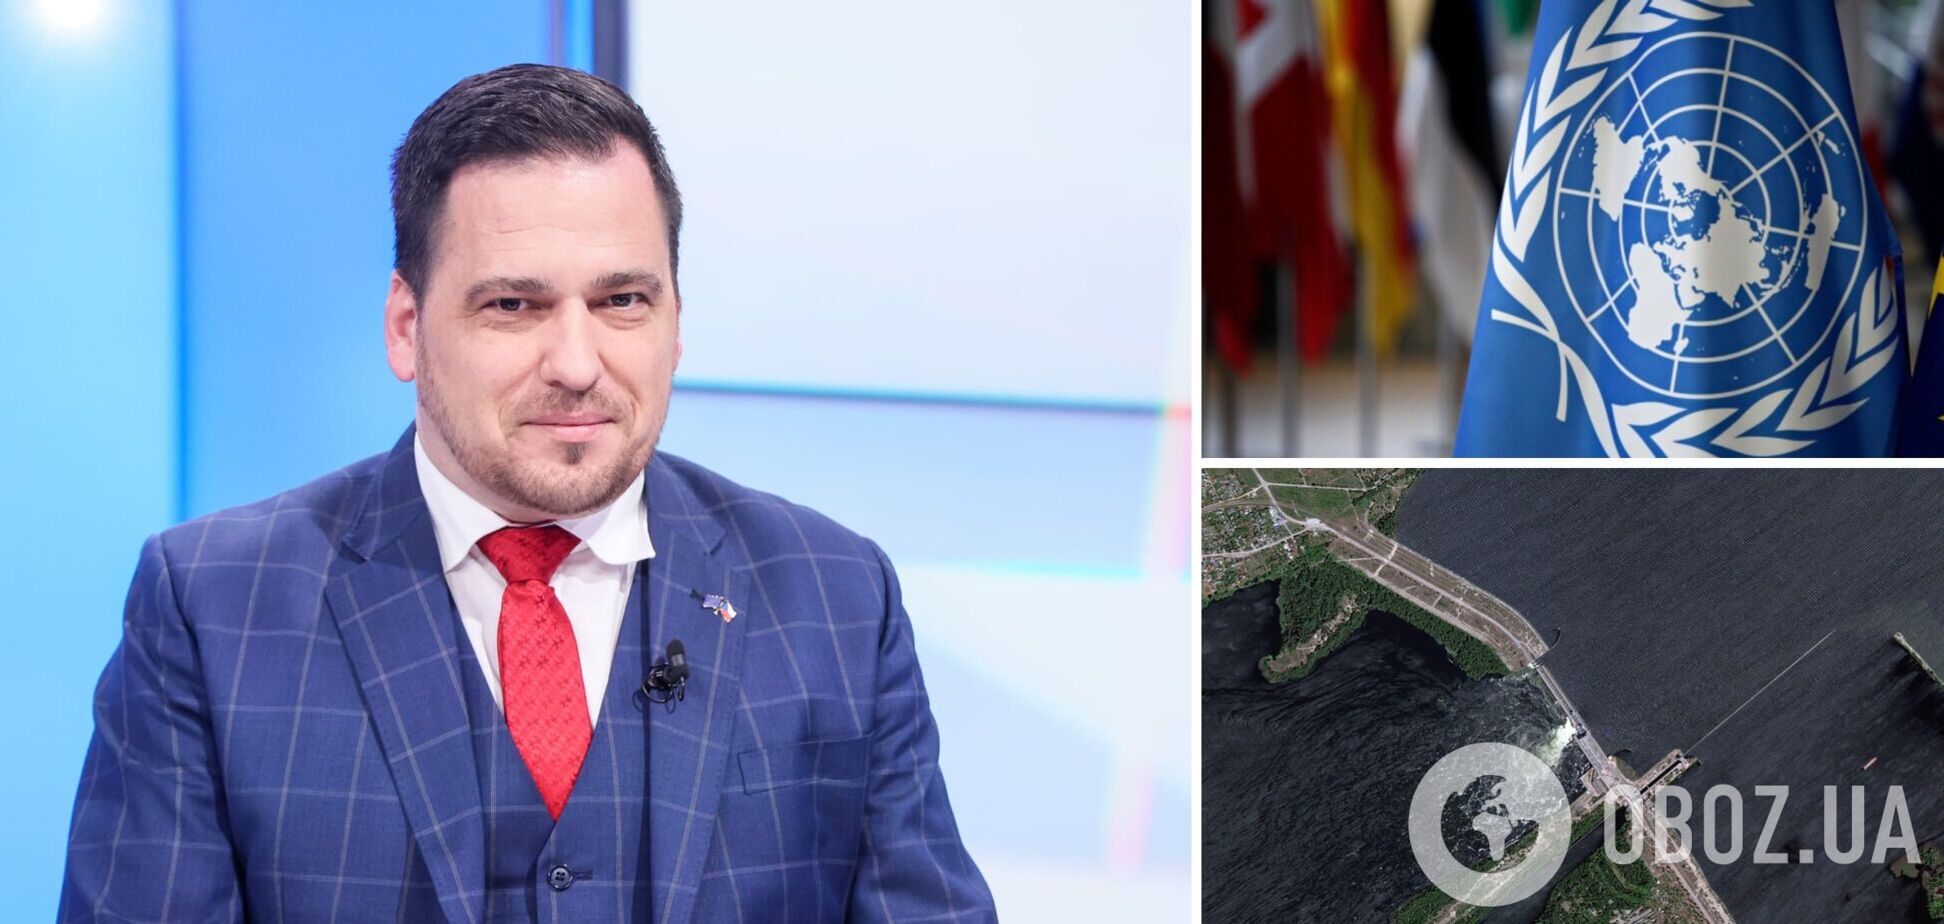 'Ви клоуни': депутат Європарламенту поставив 'діагноз' ООН після цинічного посту в день підриву Каховської ГЕС